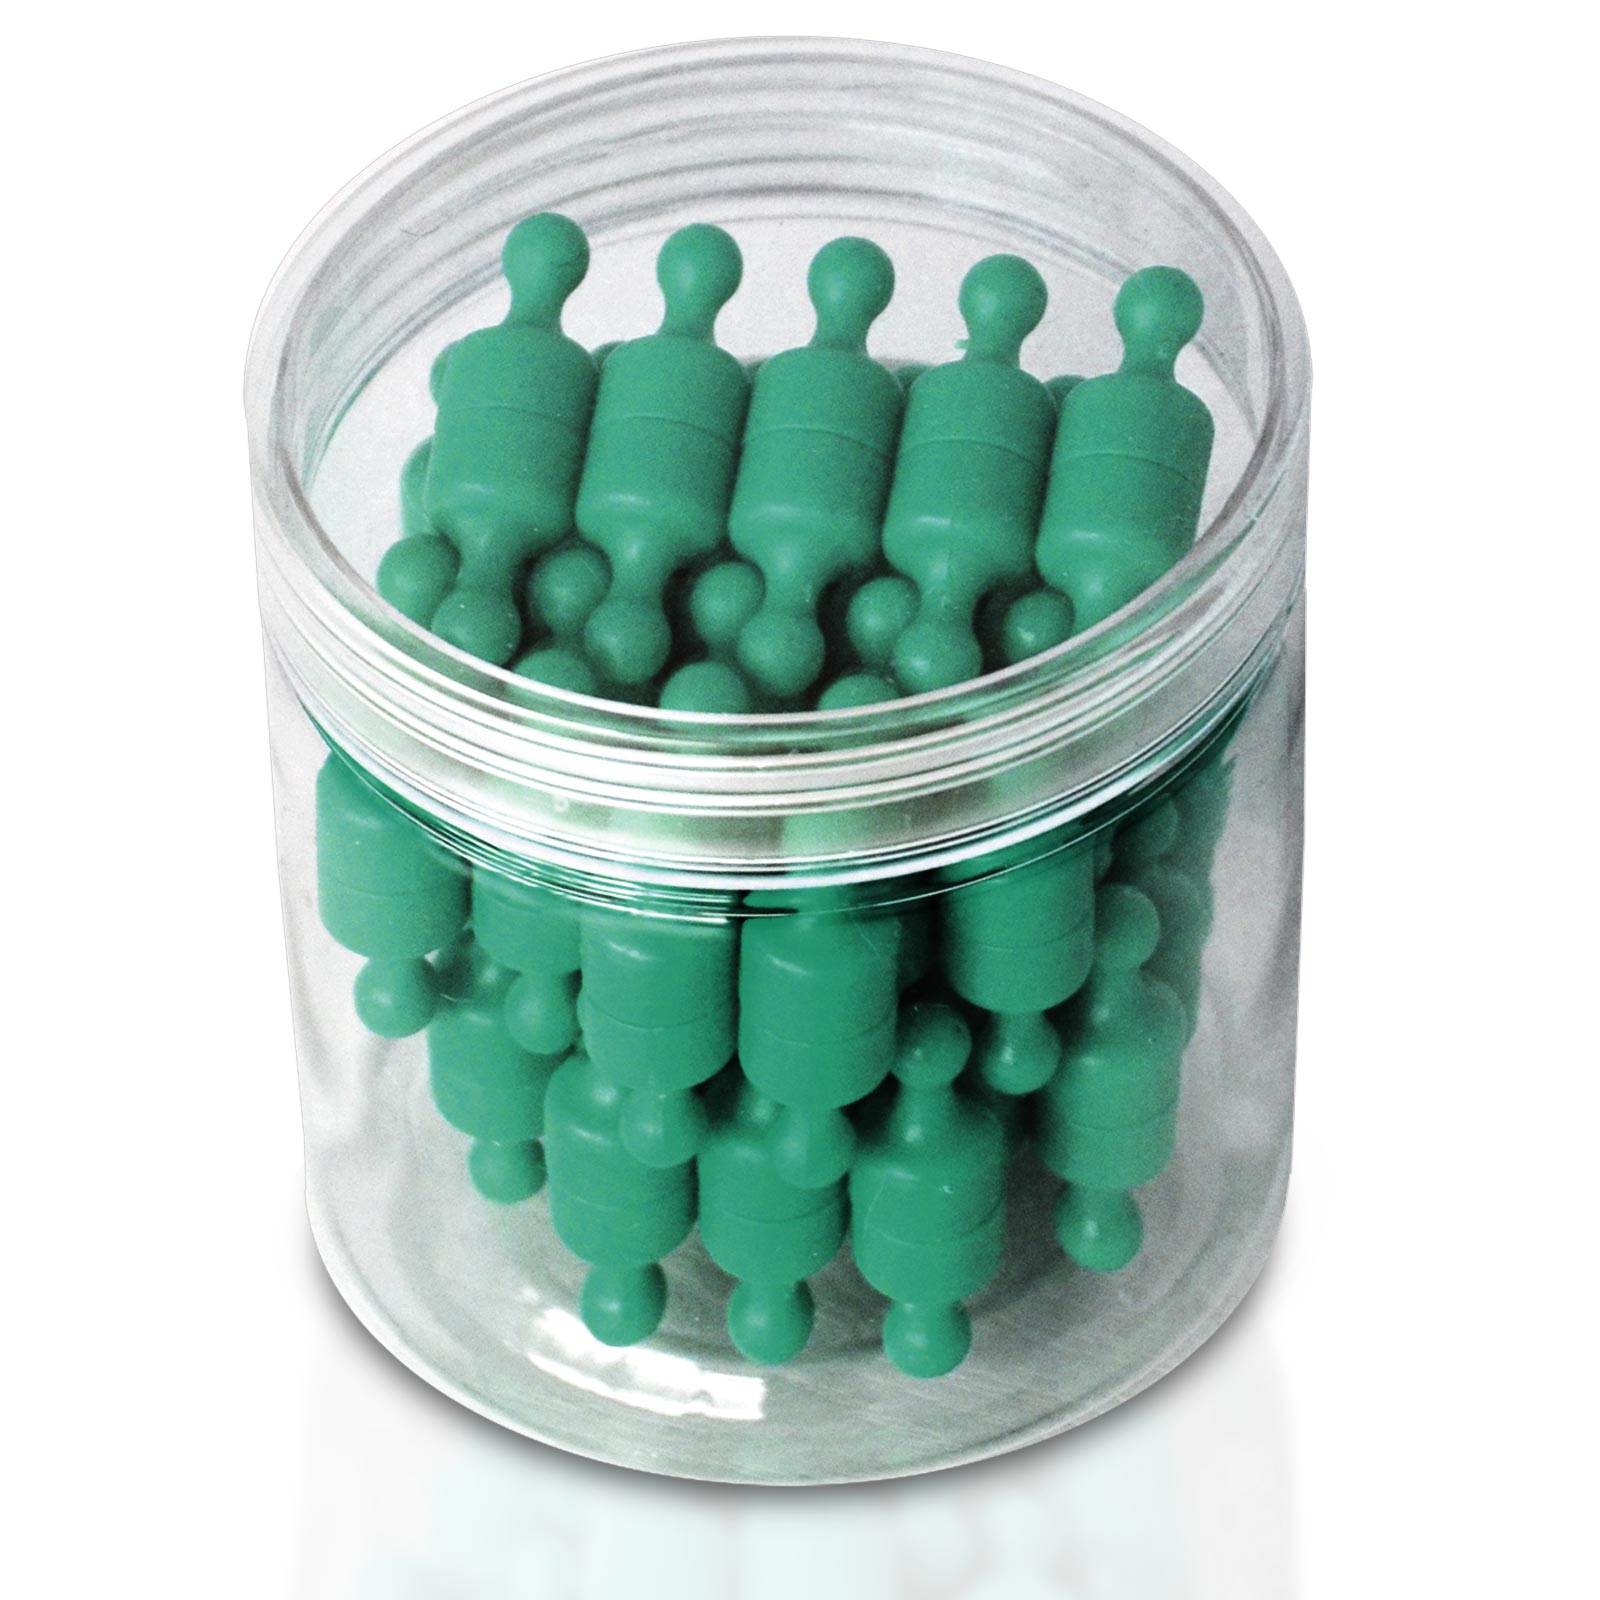 Neodym-Magnete Schach-Pins Viele Farben | Grün